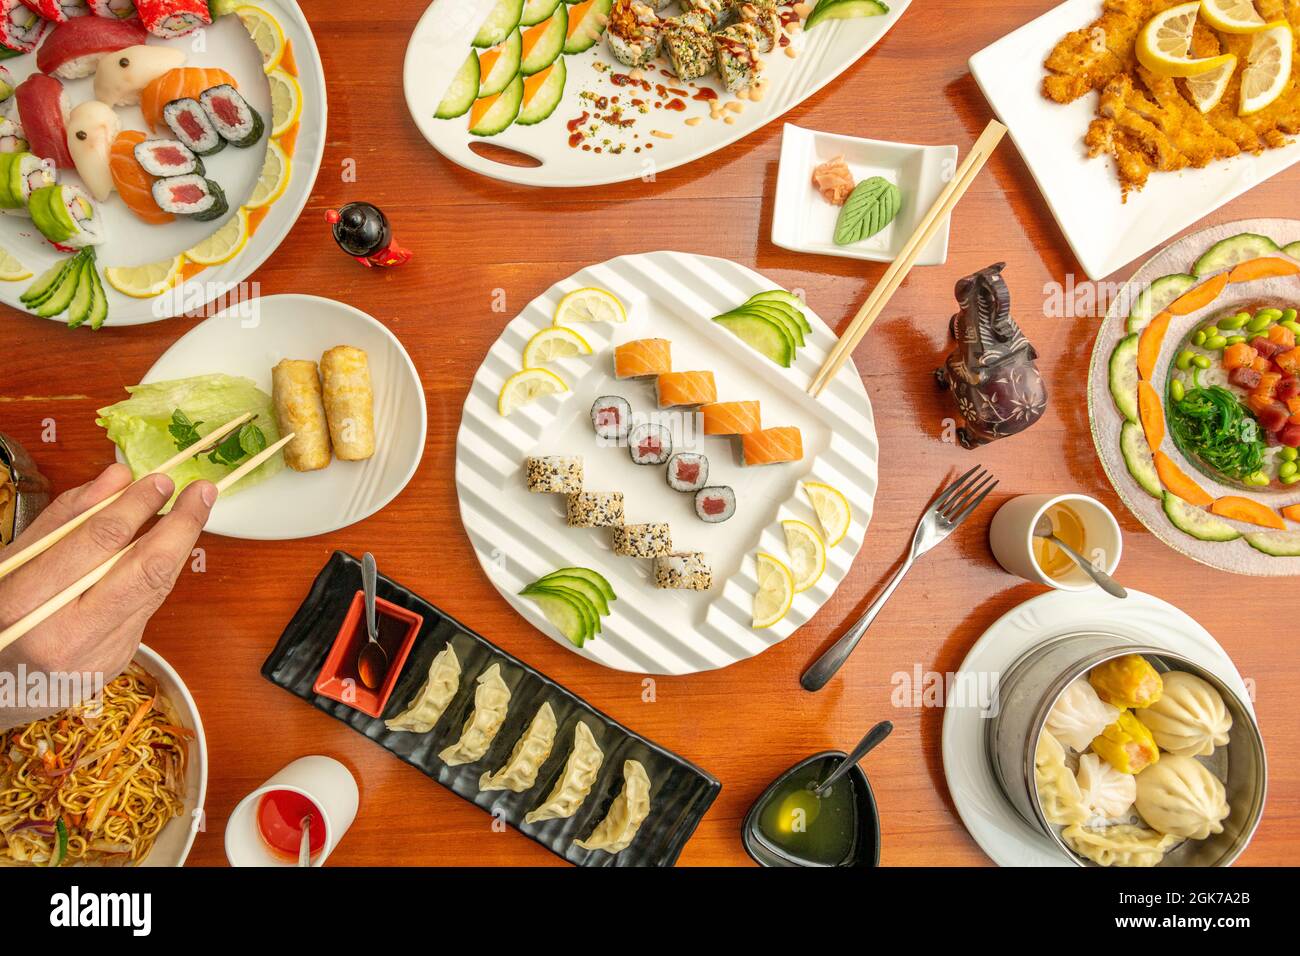 Vue de dessus des plats à sushis, uramaki, algues wakame, wasabi, saumon, thon rouge, main avec baguettes, dim sum et yakisoba assortis Banque D'Images